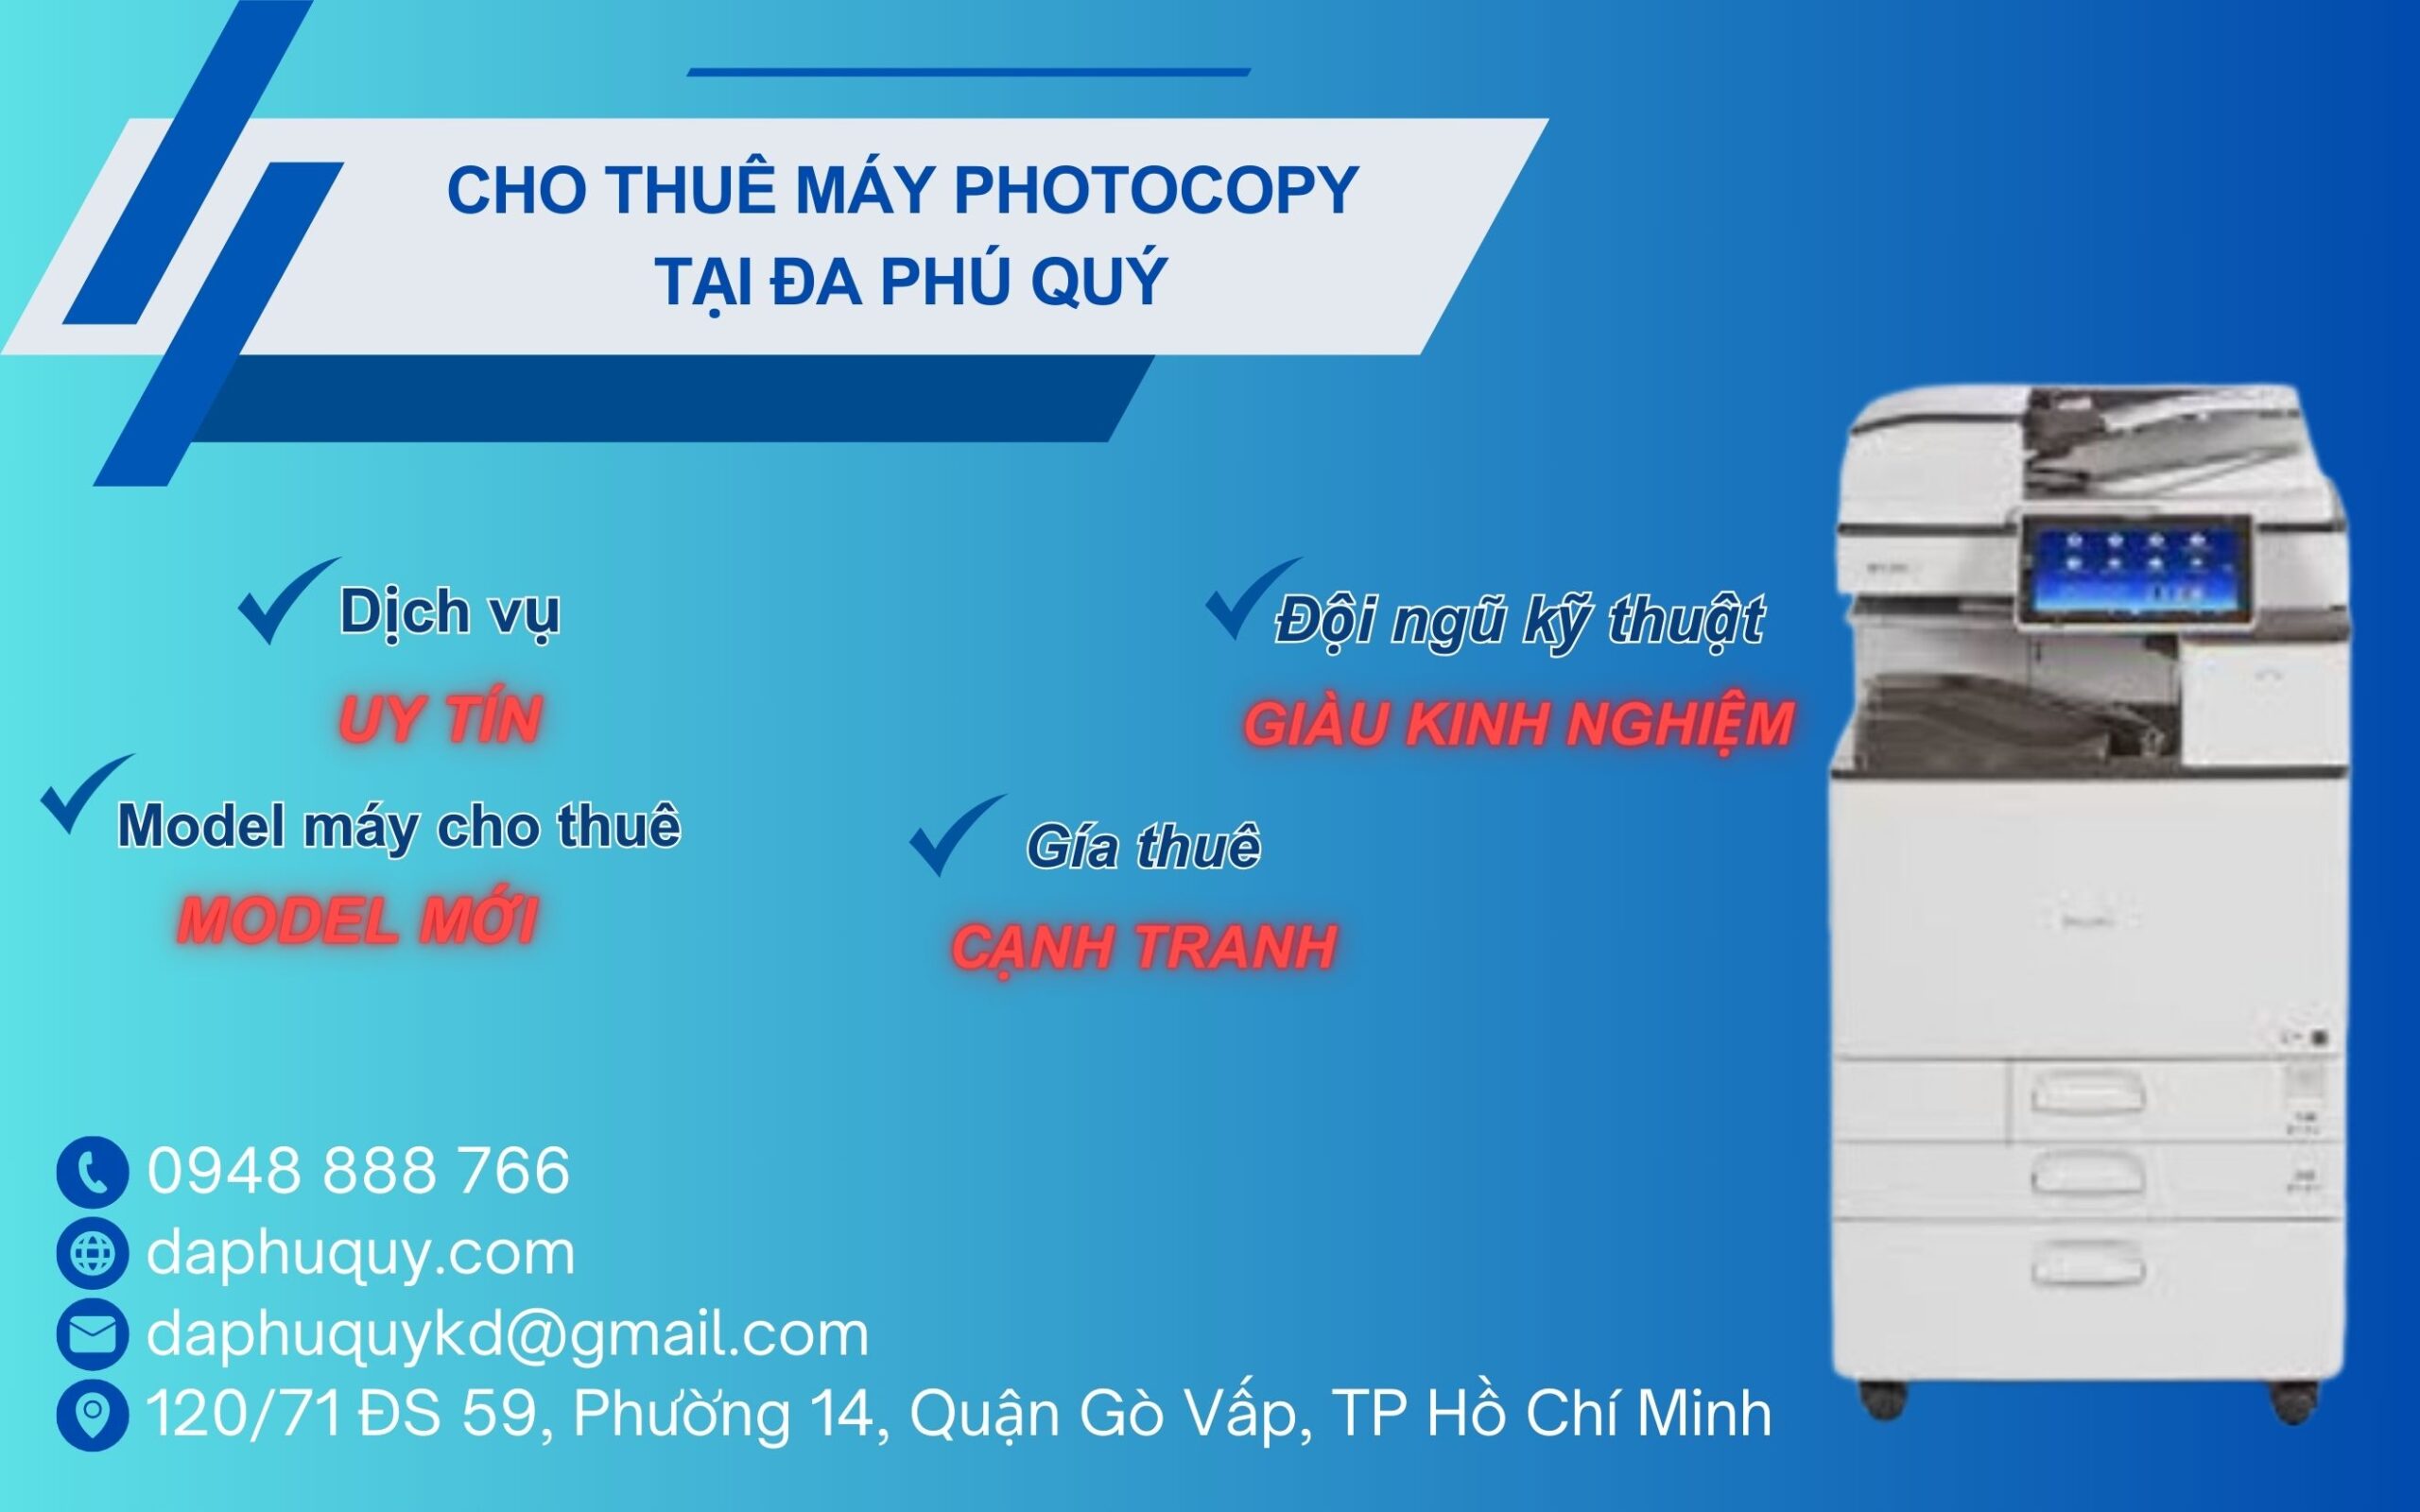 Dịch vụ cho thuê máy photocopy Ricoh MP 5055 uy tín